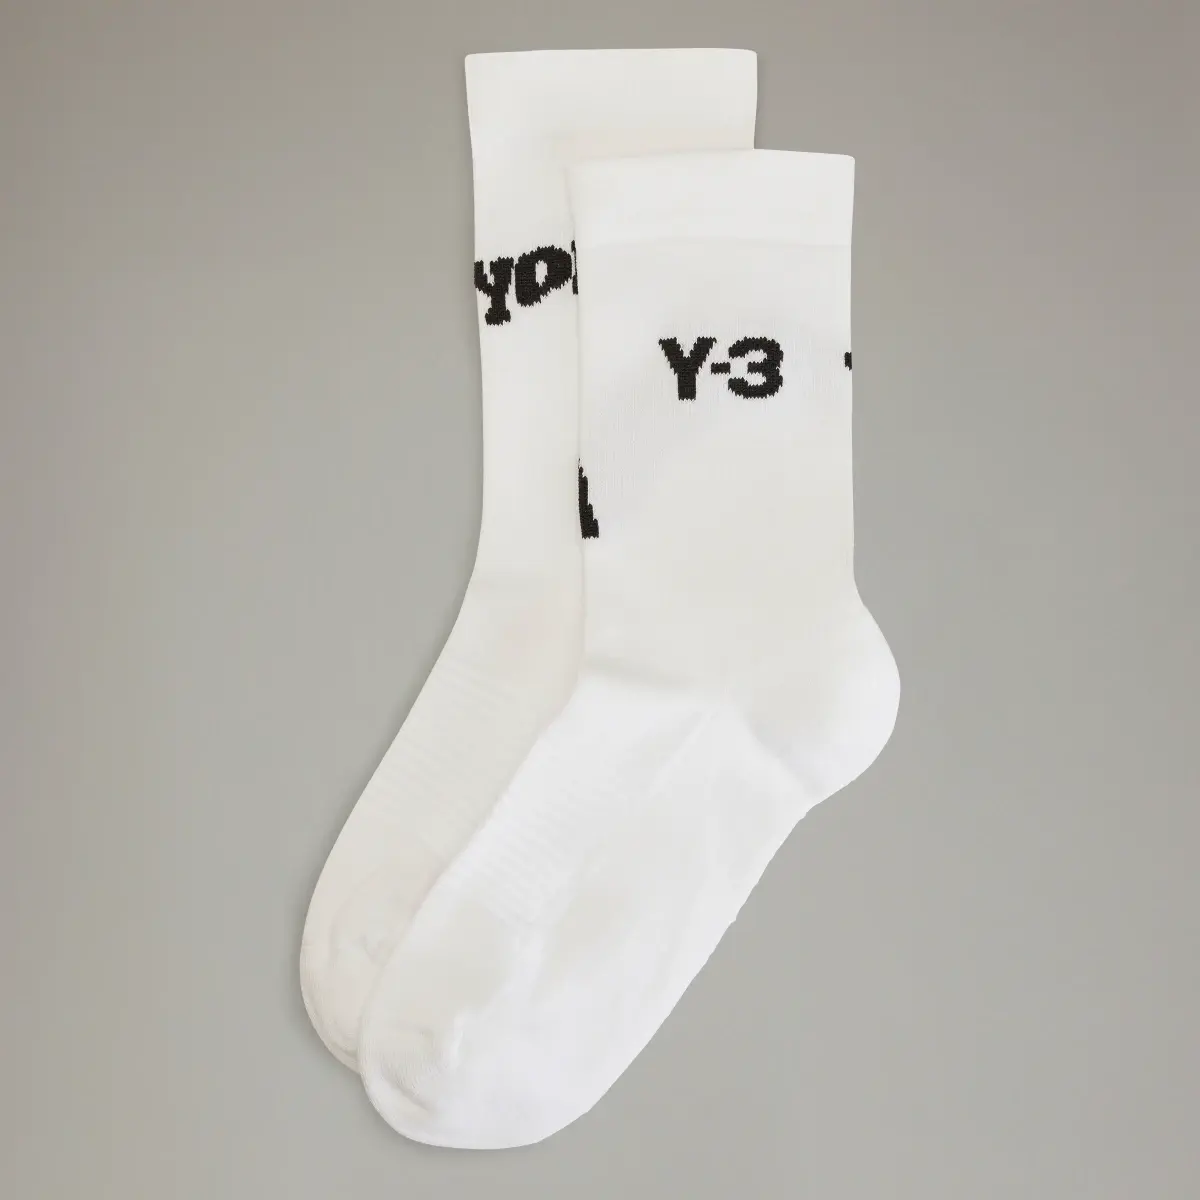 Adidas Y-3 Crew Socks. 1